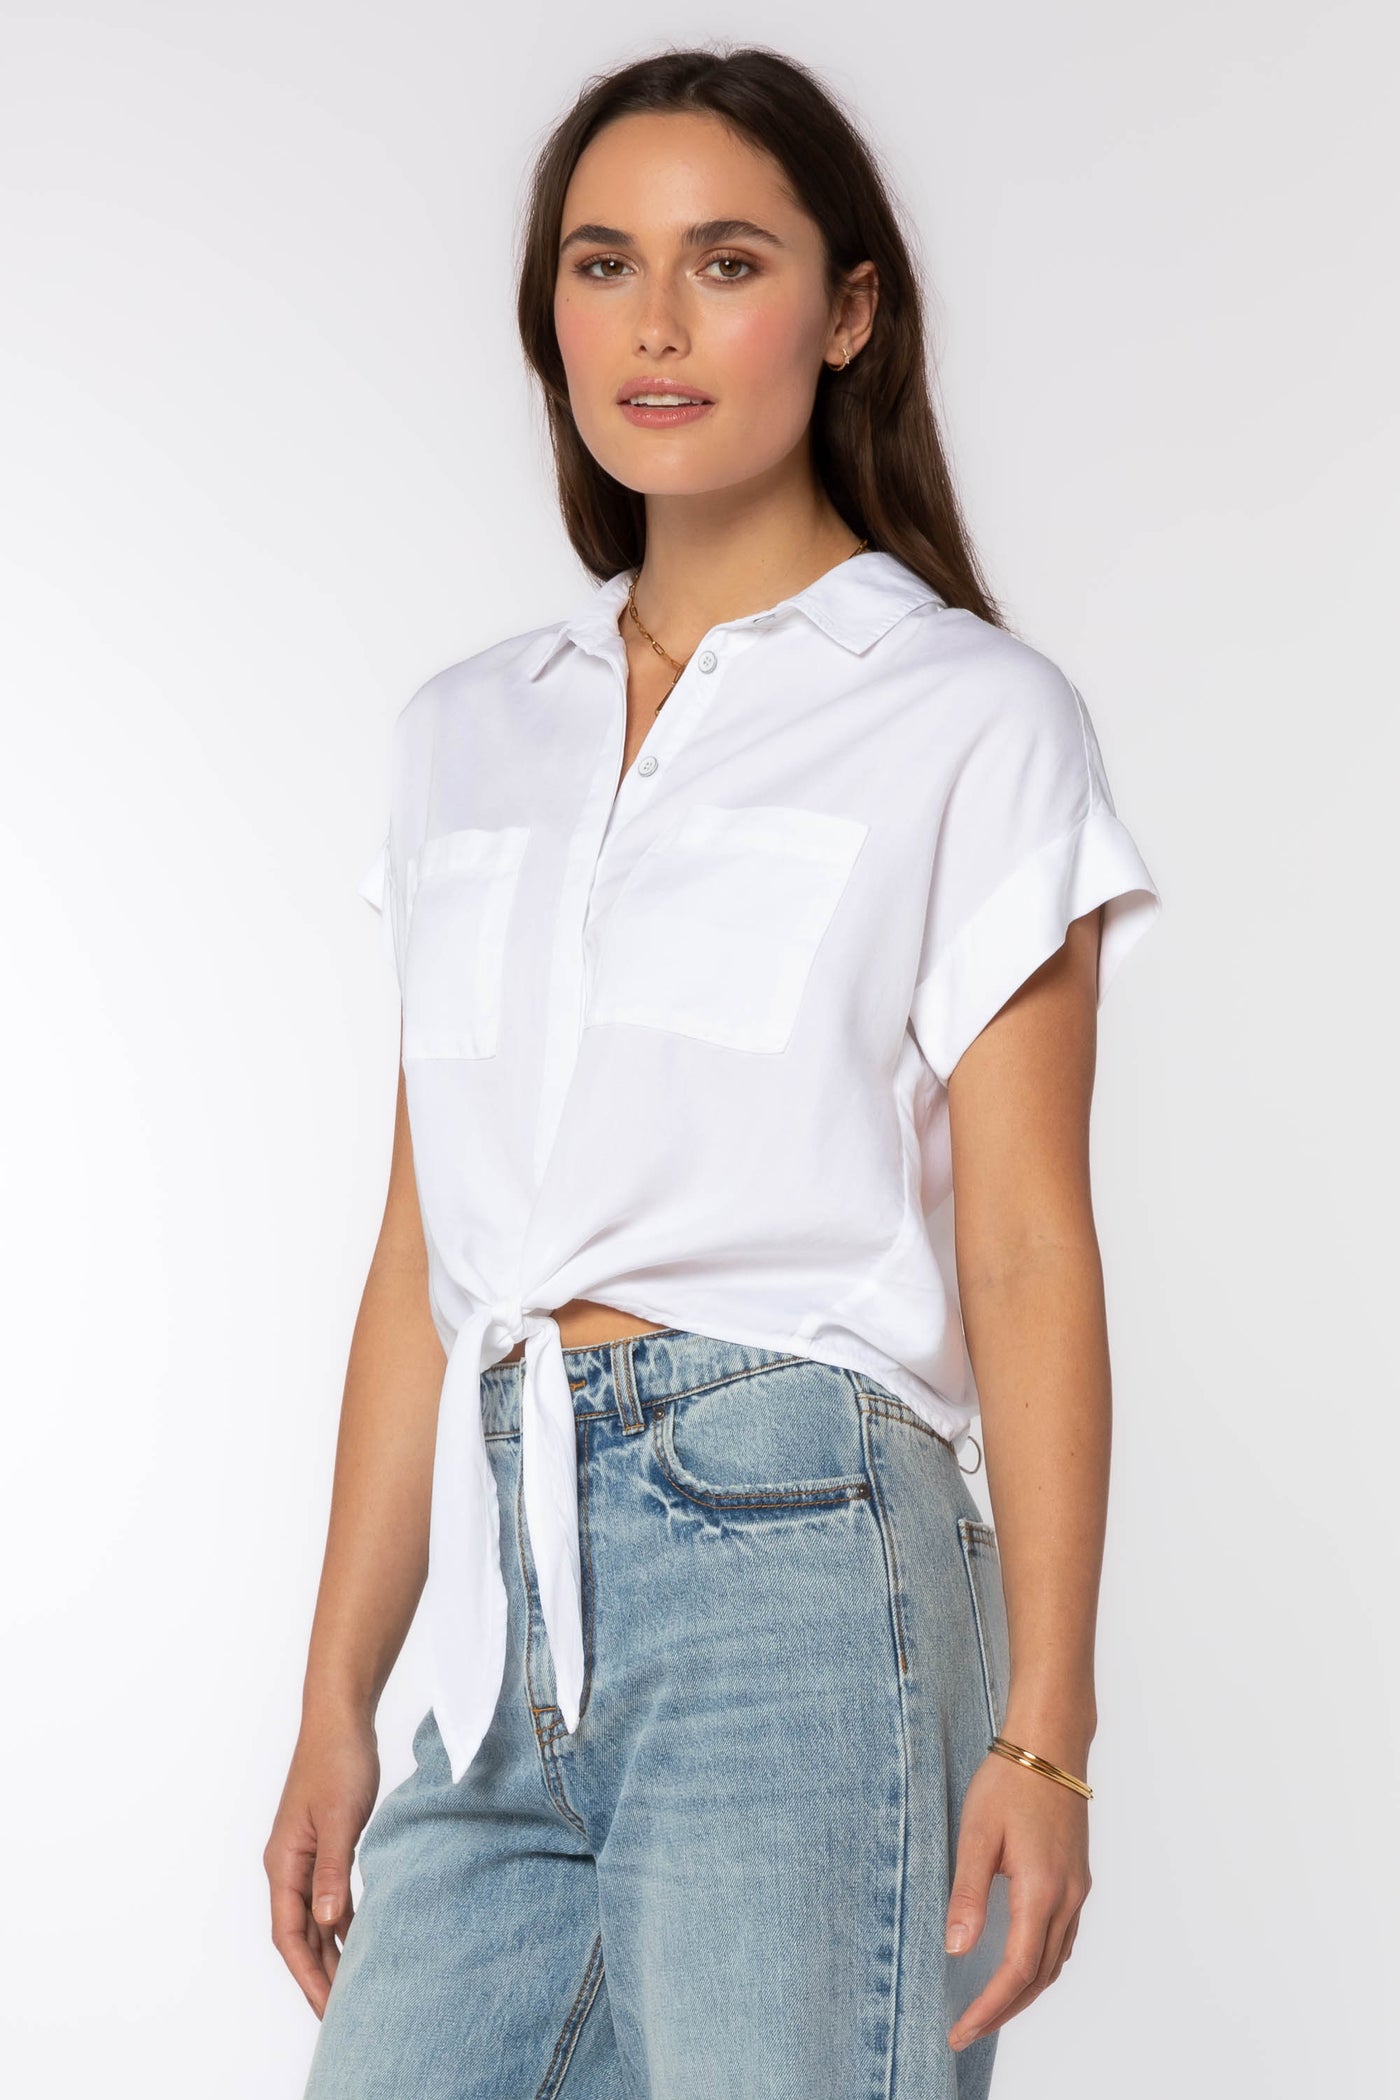 Zuria Shirt - Tops - Velvet Heart Clothing